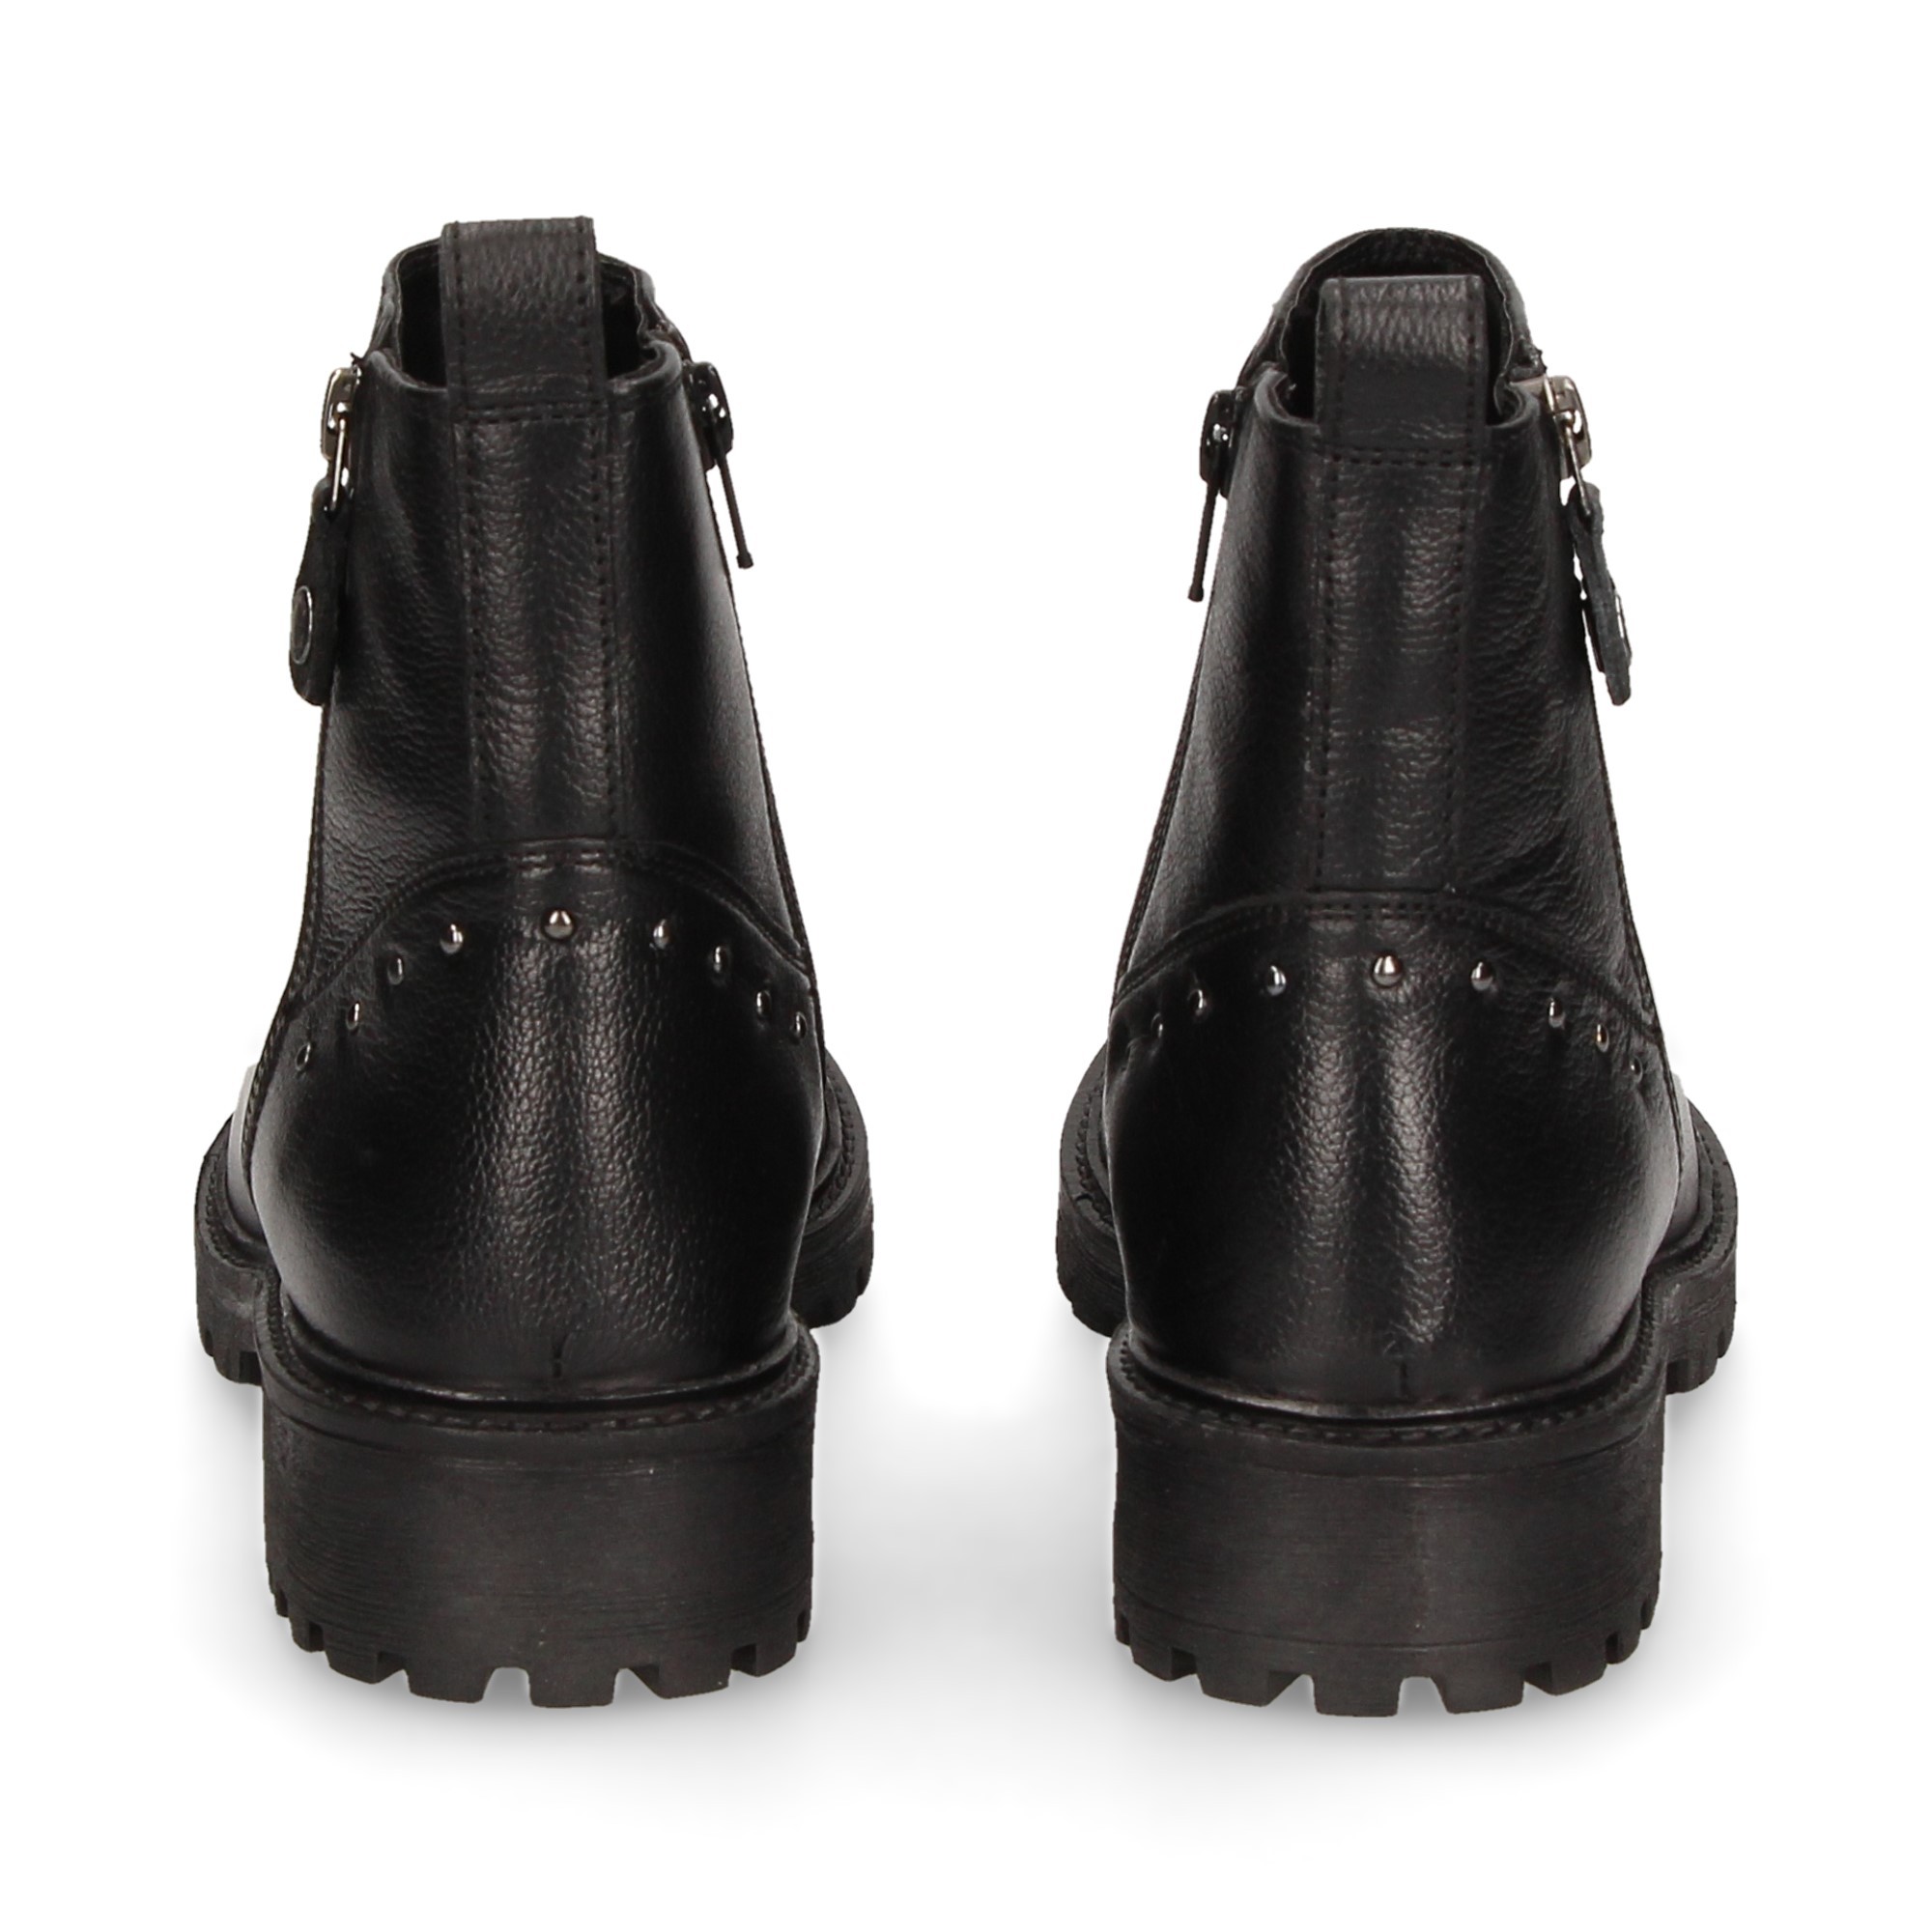 studs-on-talon-black-zipper-boot